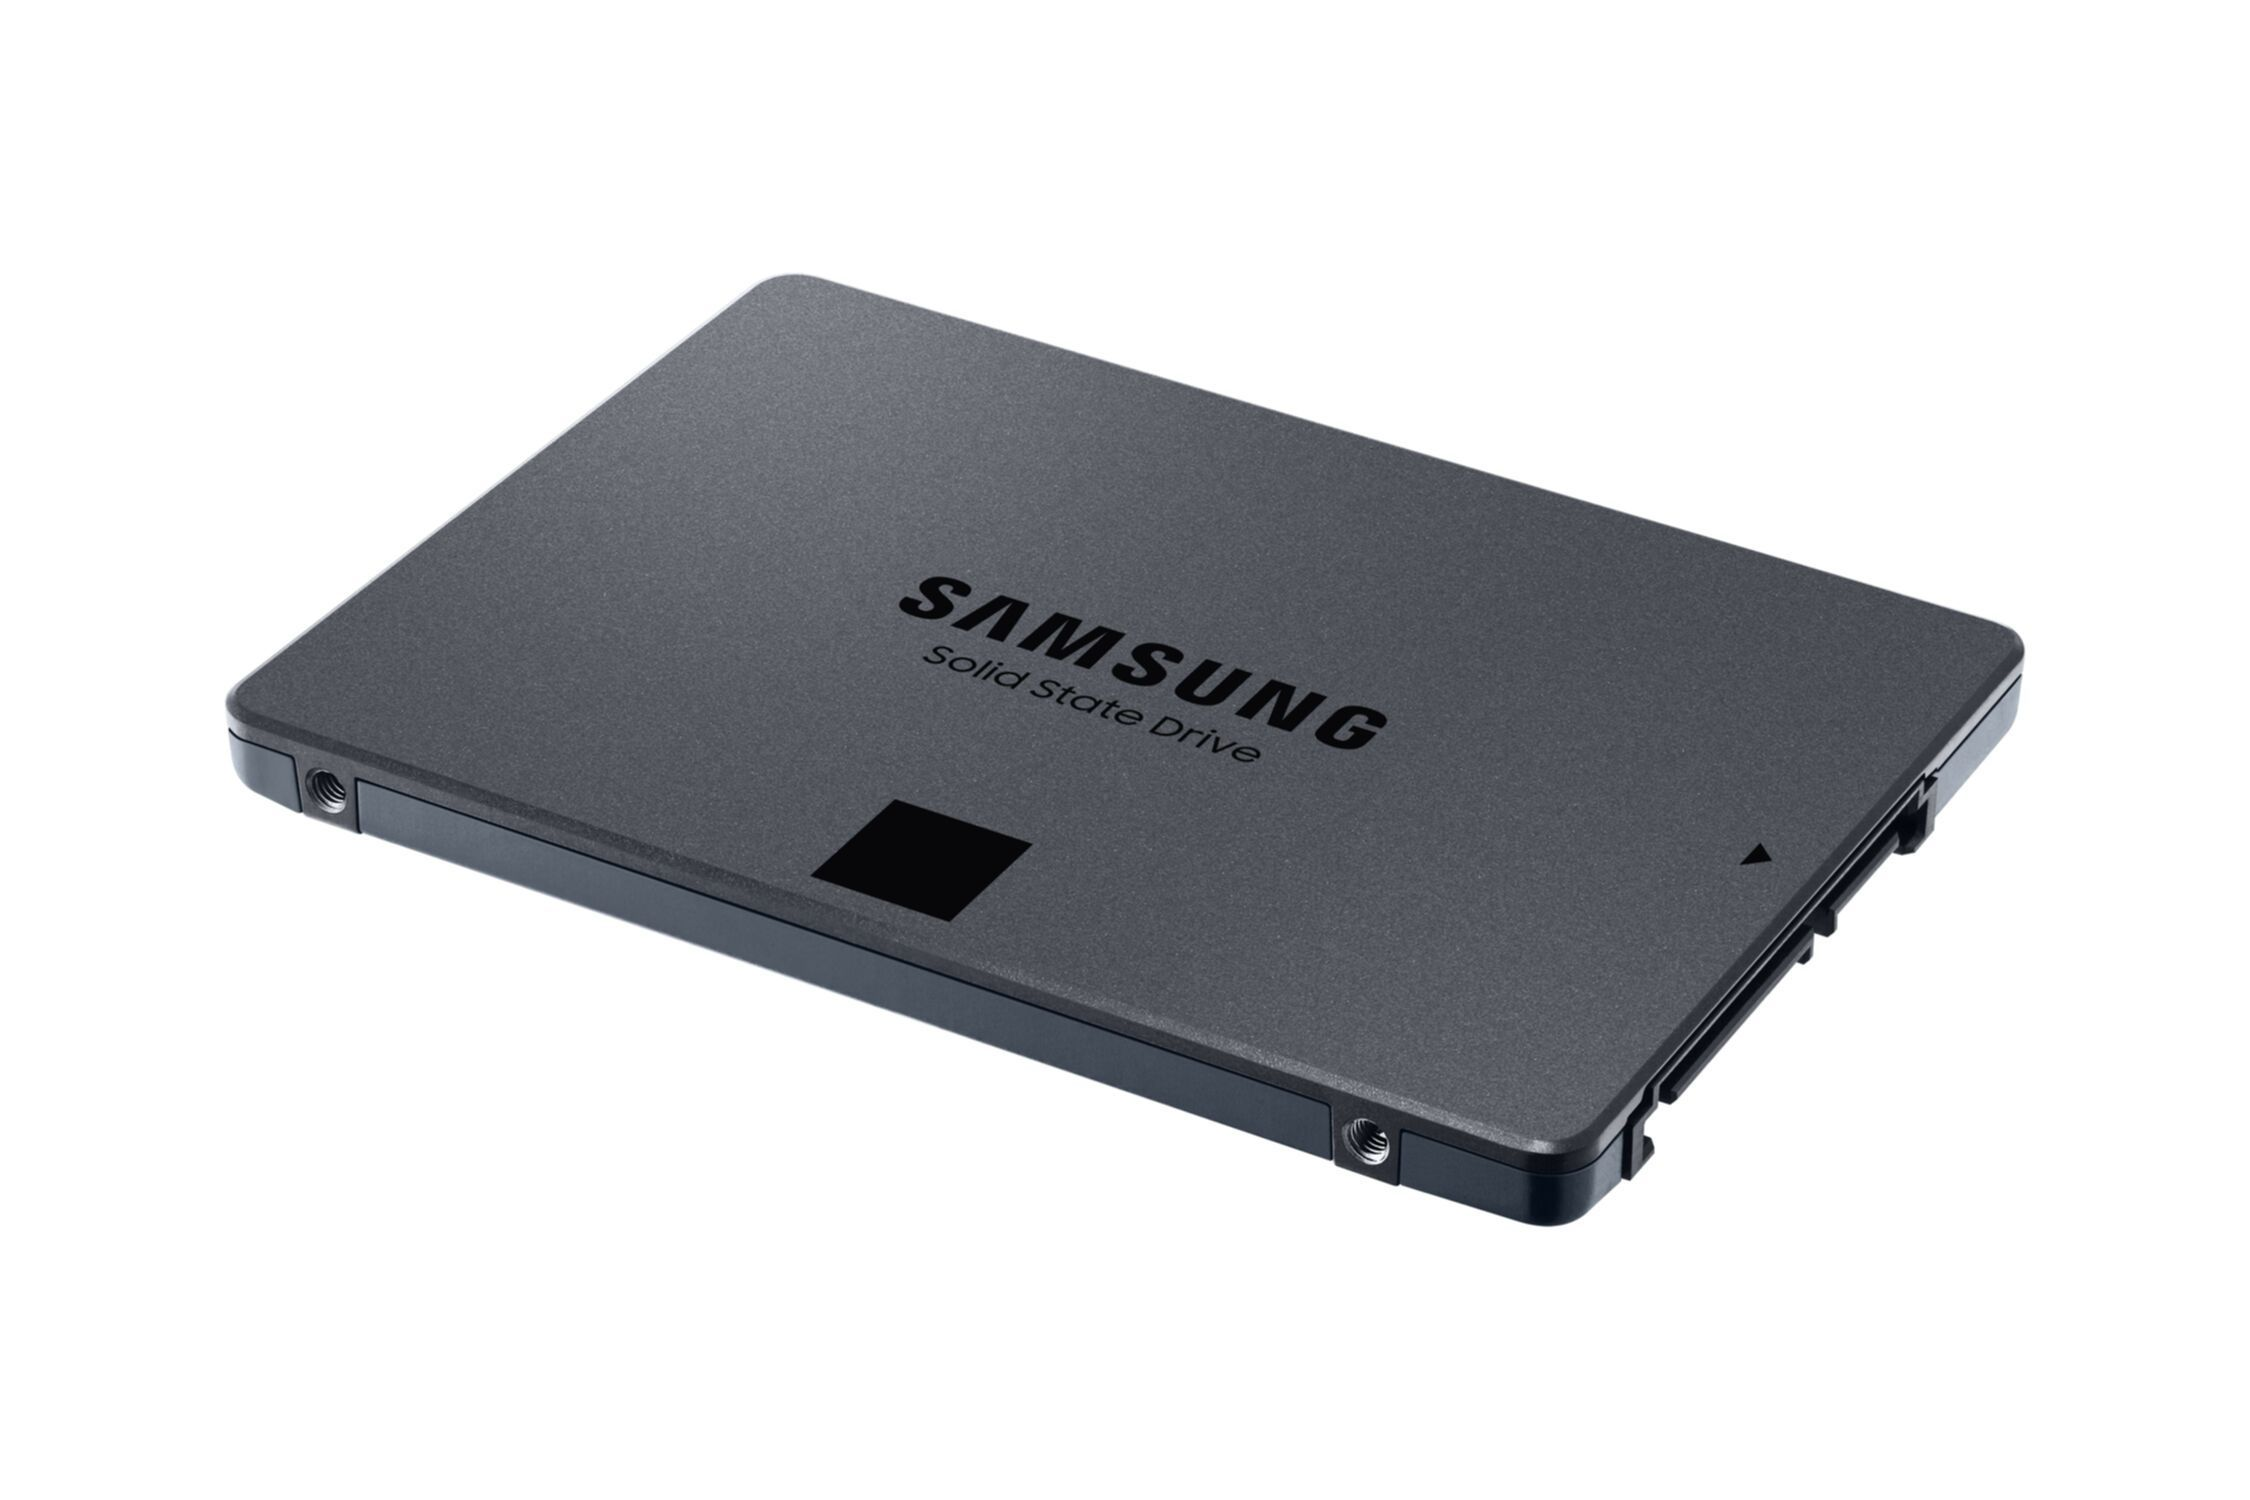 2,5 SSD, MZ-77Q4T0, GB, 4000 Zoll, SAMSUNG intern